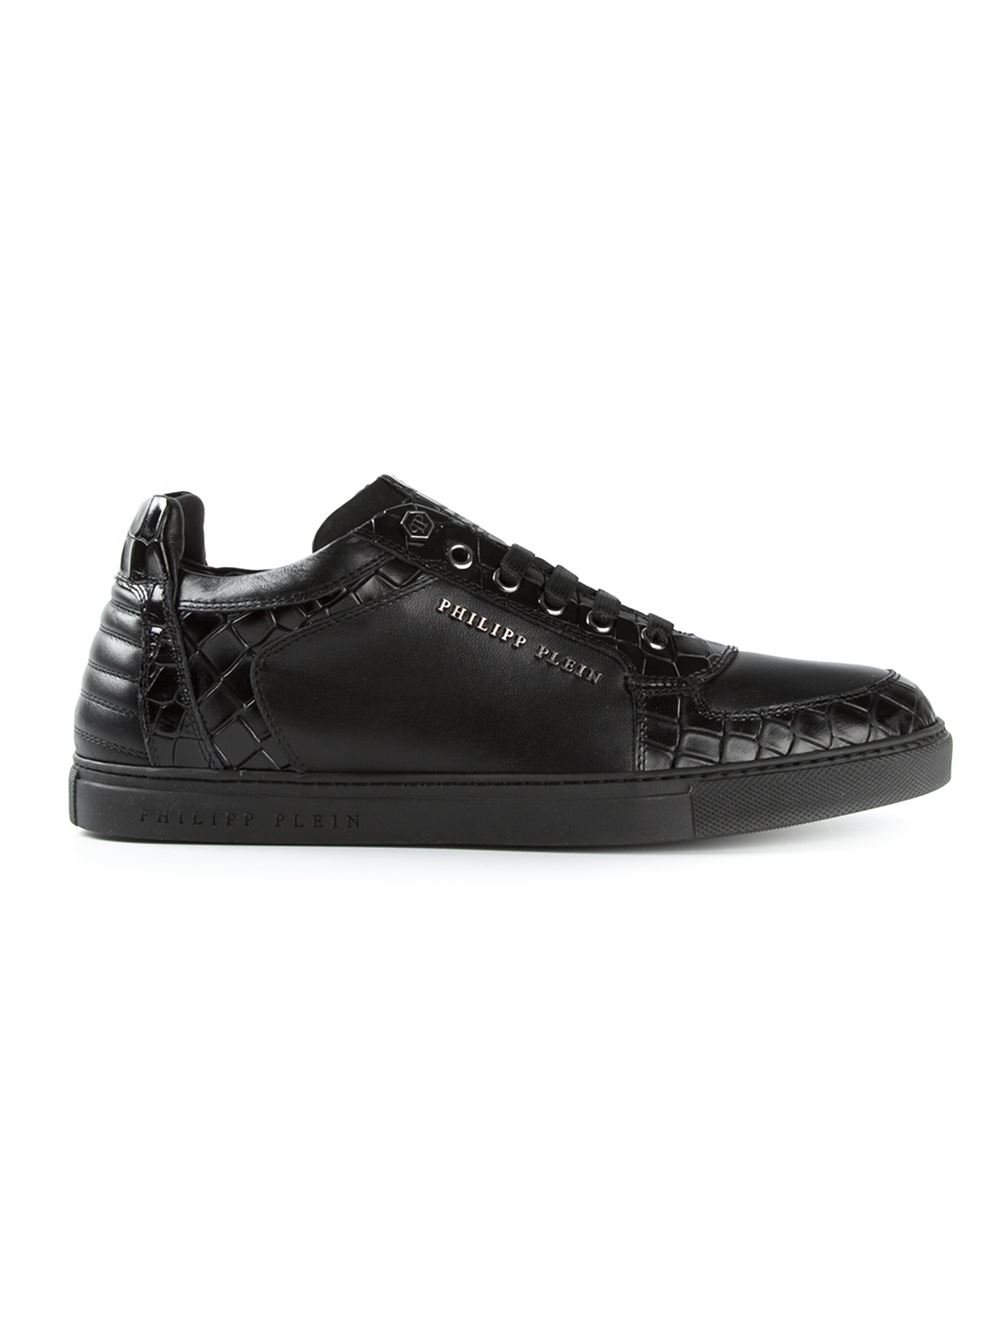 Philipp Plein Crocodile Effect Sneakers in Black for Men | Lyst